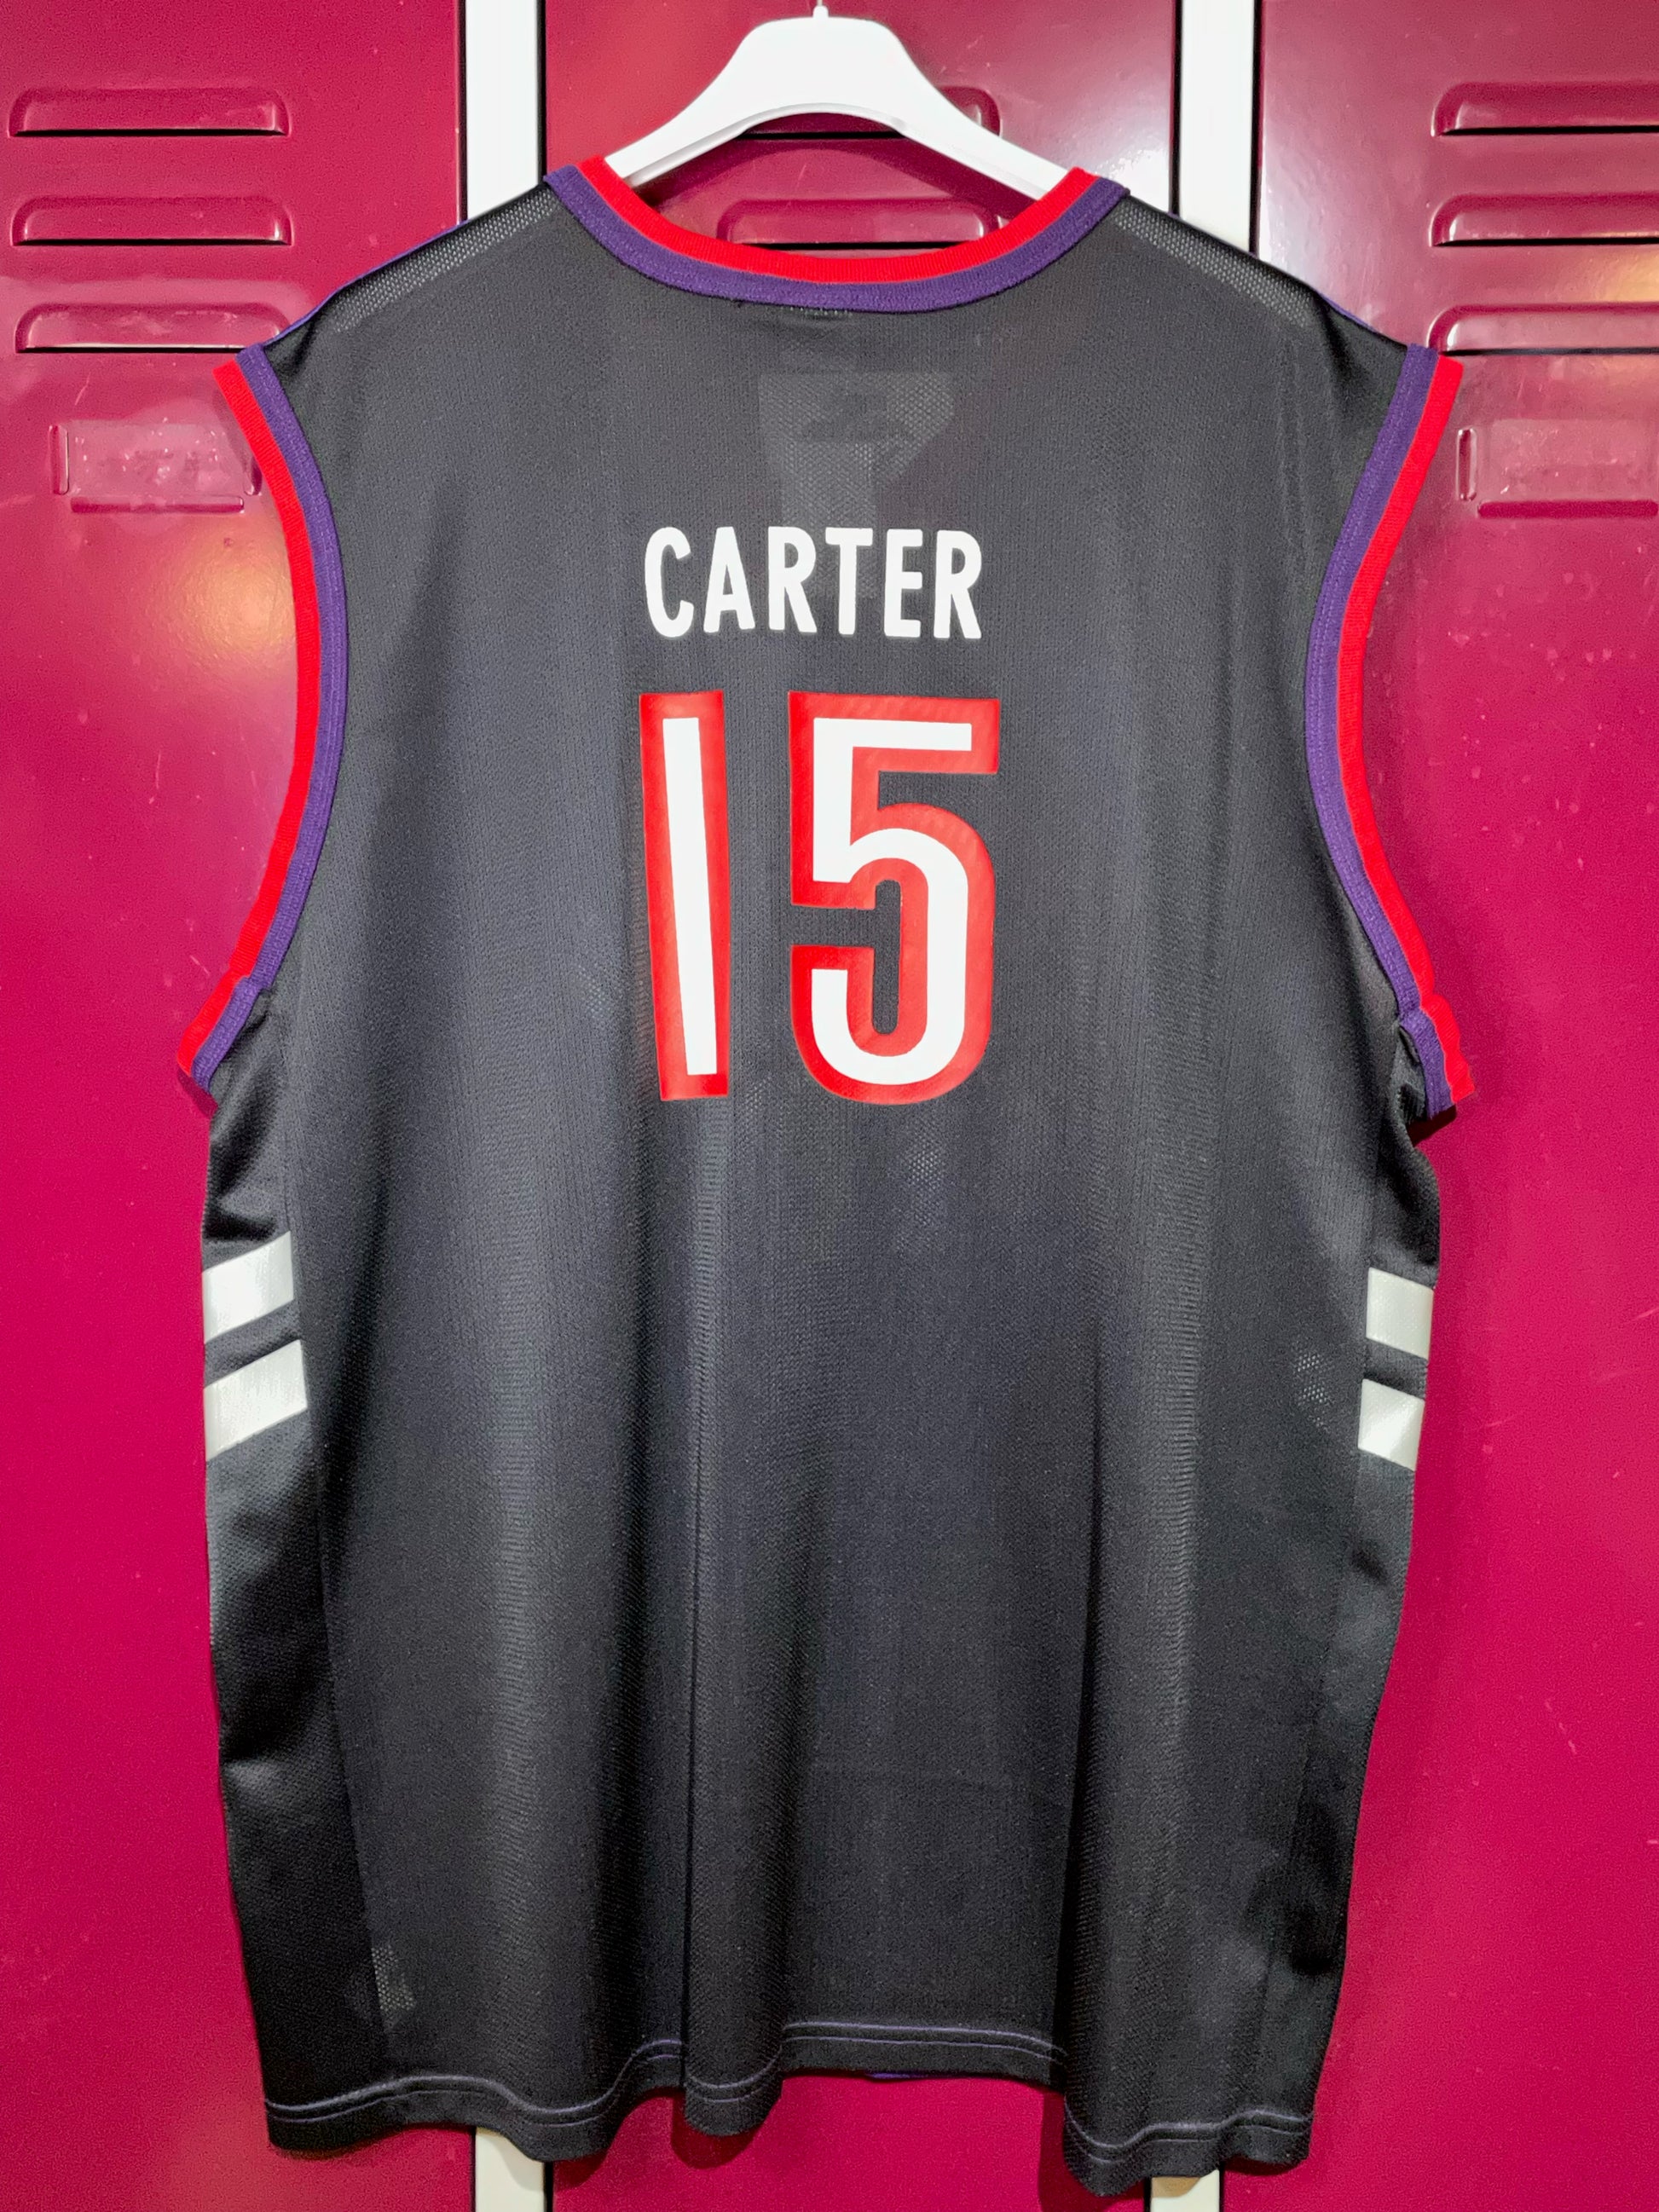 Vince Carter Vintage Toronto Raptors Basketball Jersey 